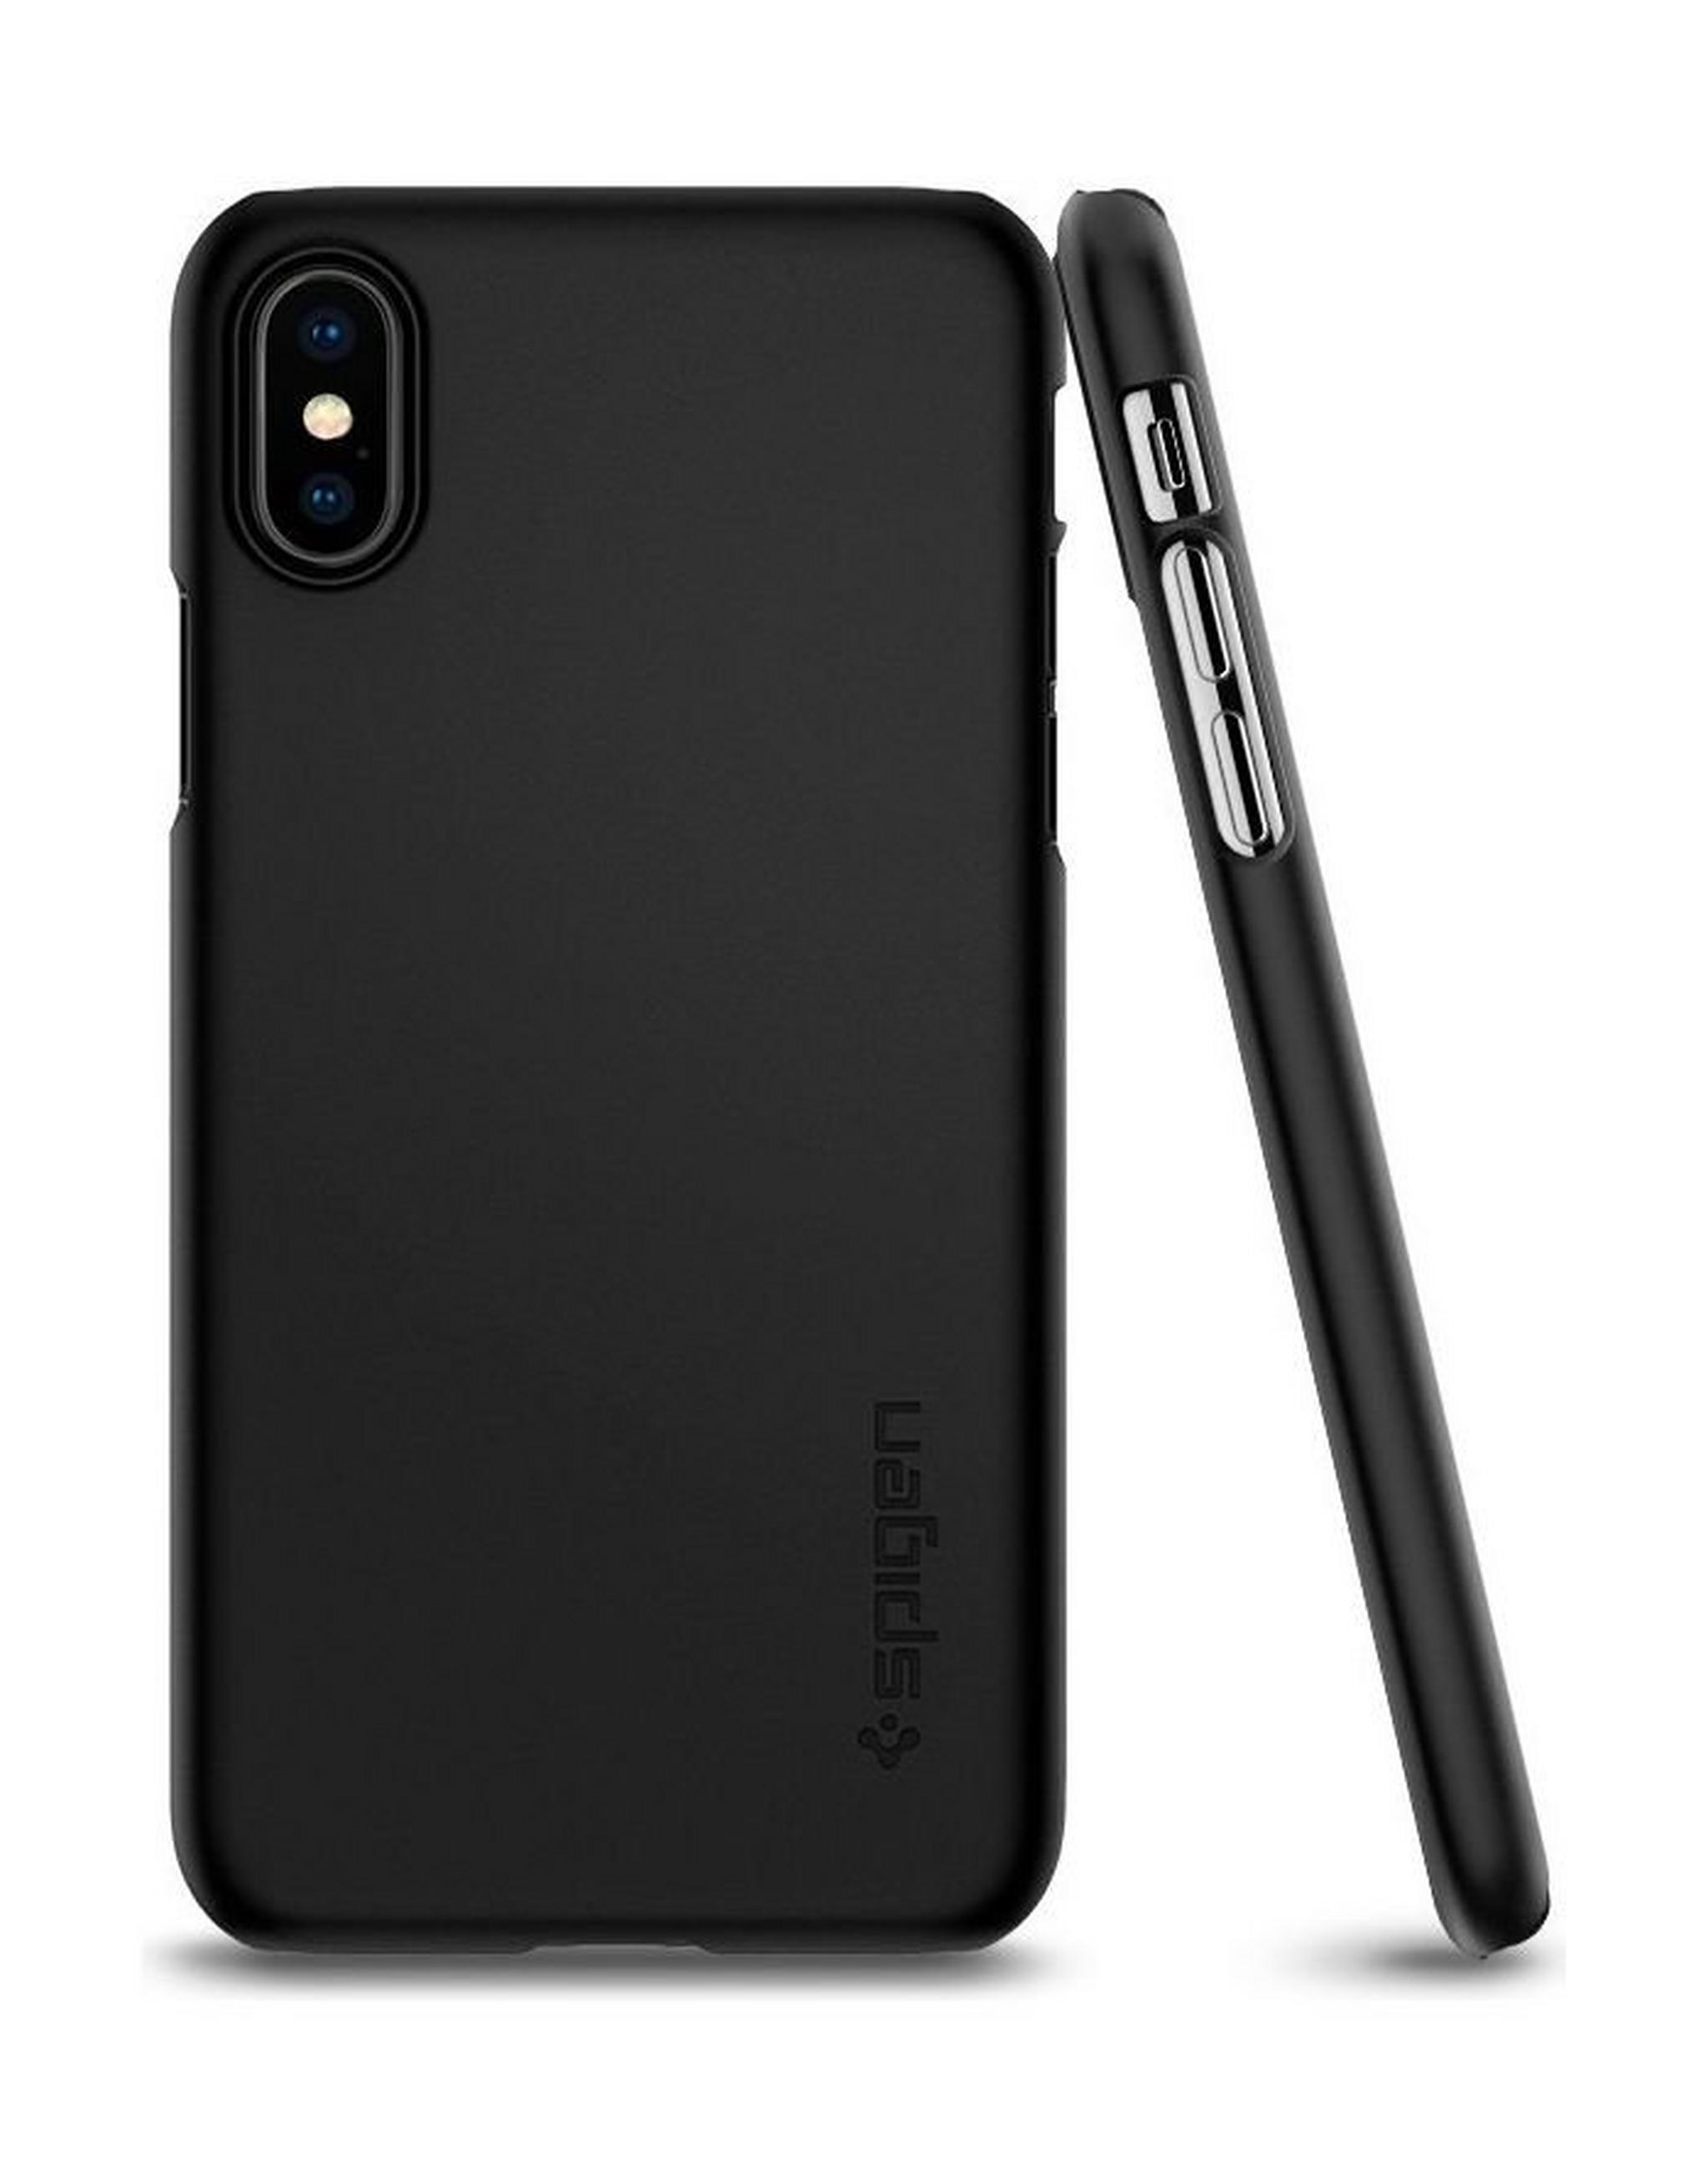 Spigen Thin Fit Case For iPhone X - Matte Black